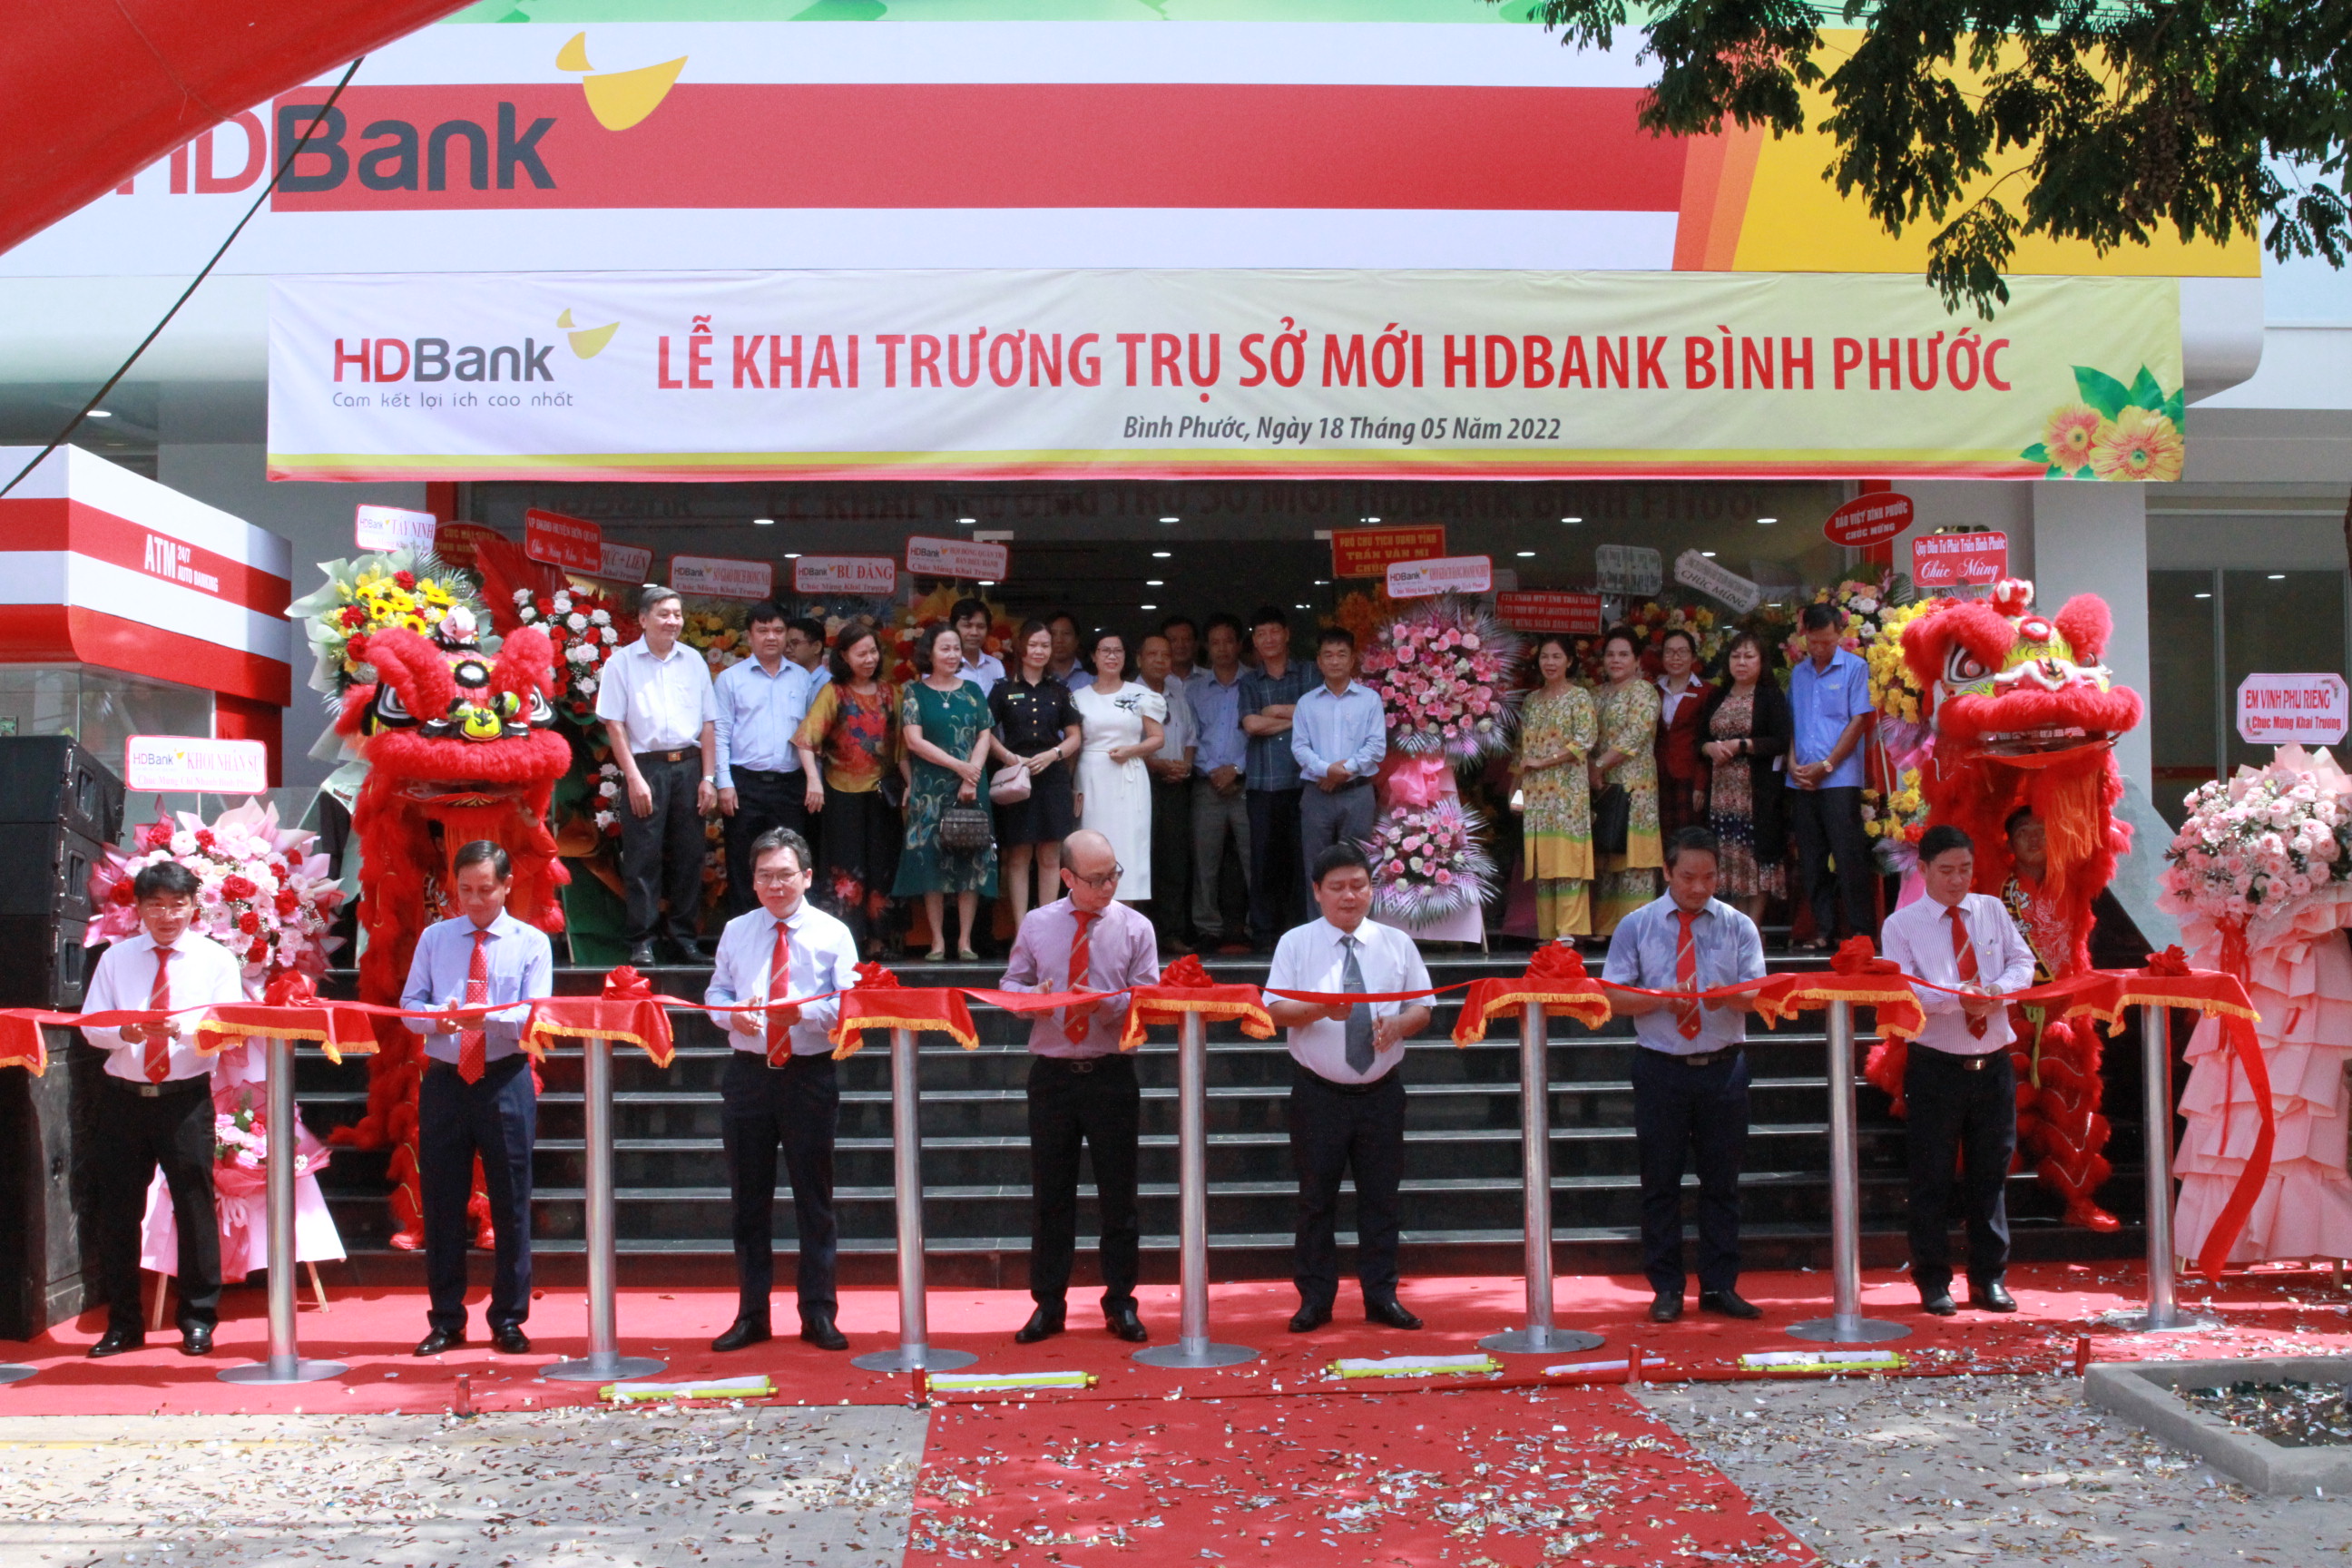 HDBank Bình Phước: Điểm đến mới lạ, tươi sáng và tràn ngập tiềm năng của ngân hàng HDBank - Bình Phước. Hãy tò mò khám phá hình ảnh liên quan và cảm nhận sự thăng hoa của HDBank tại địa phương này.